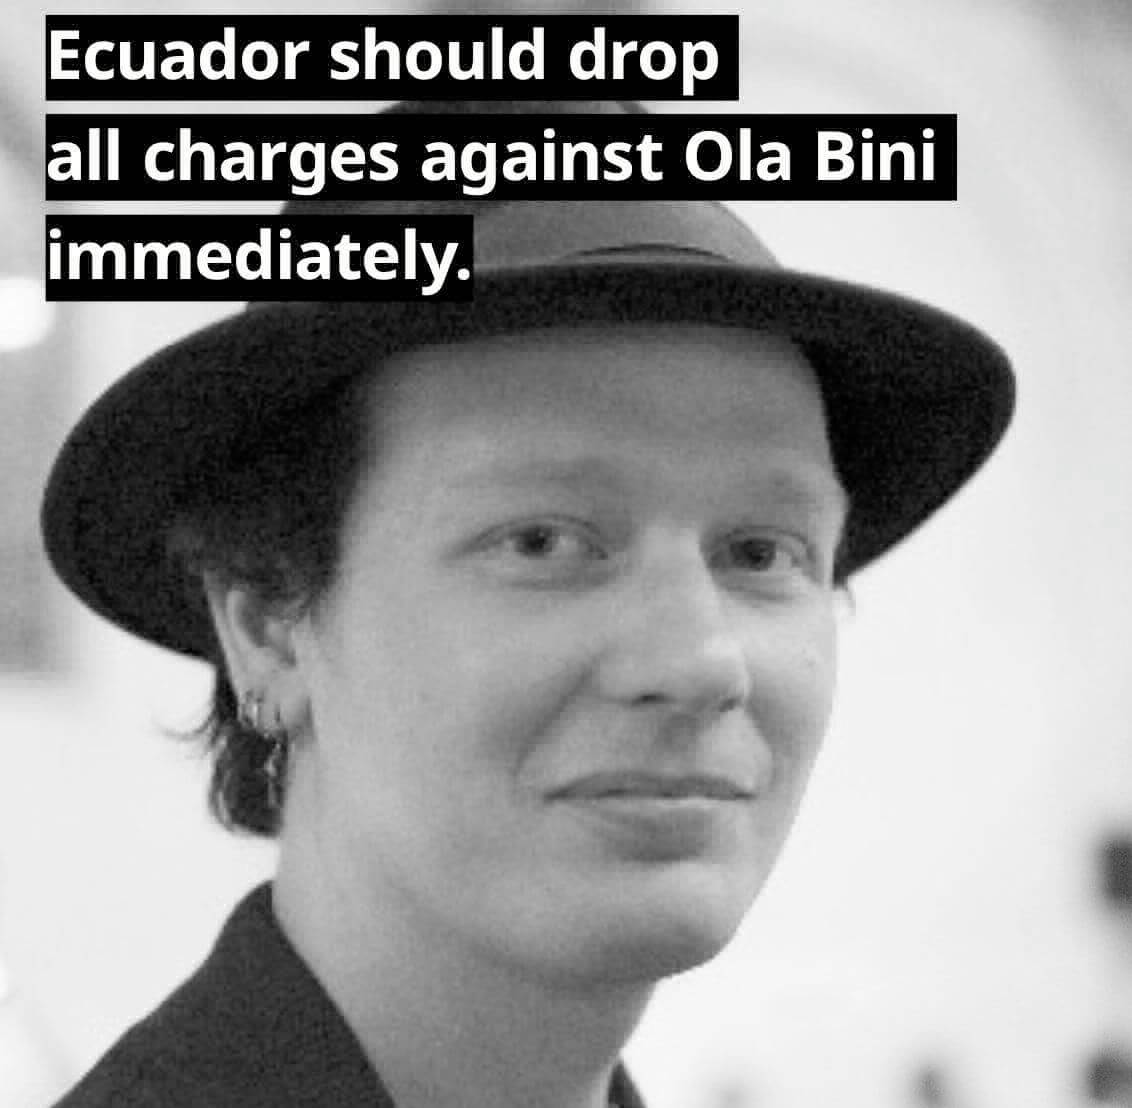 Carta de Solidaridad por la Liberación de Ola Bini